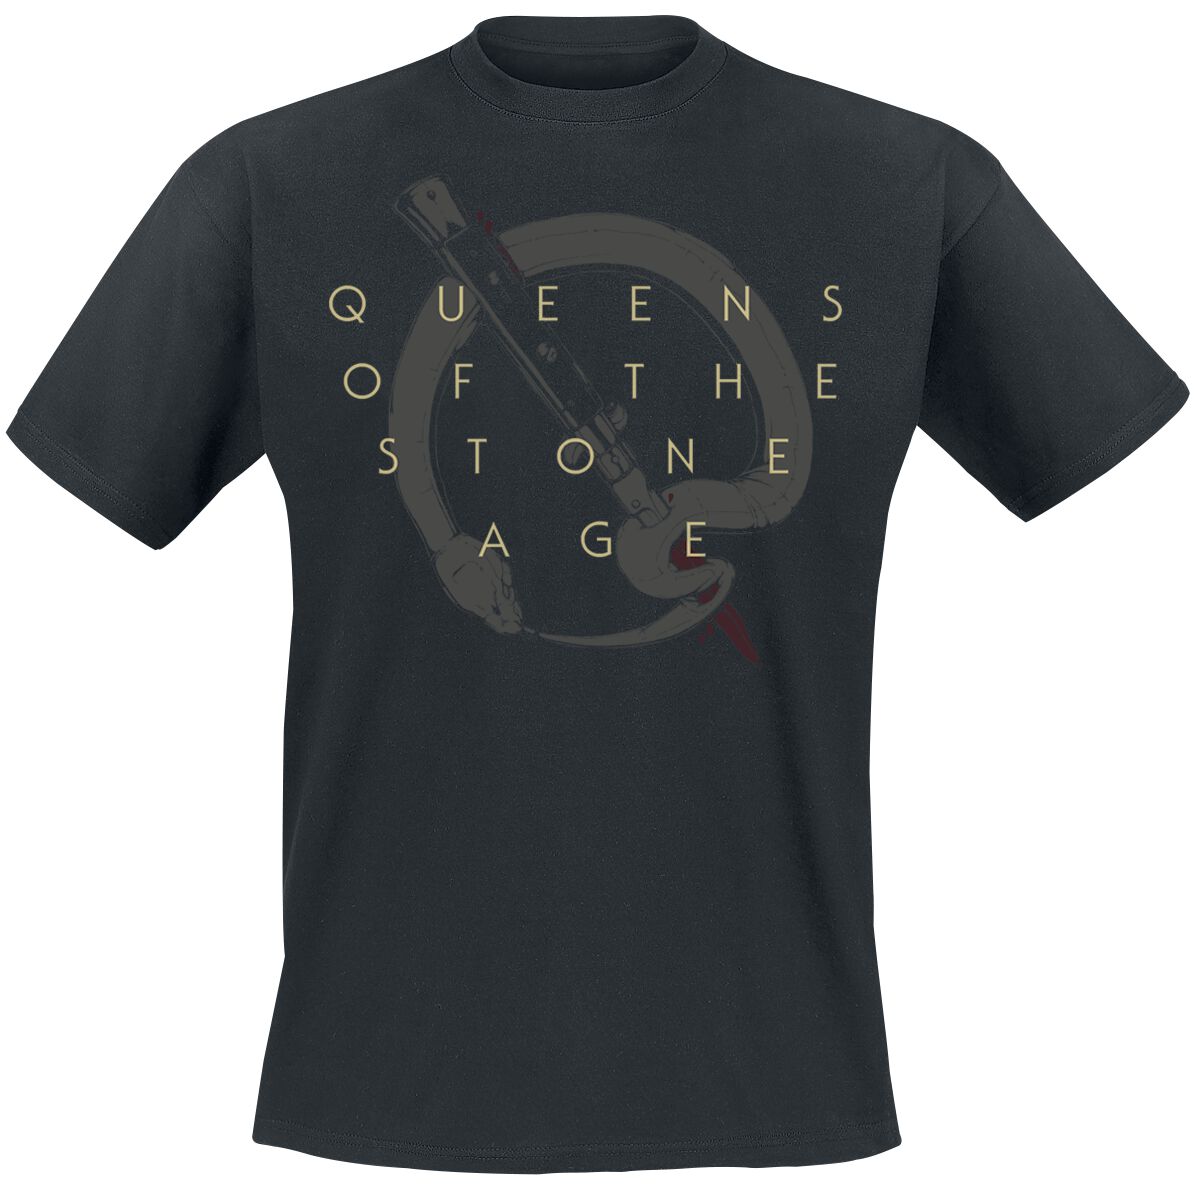 Queens Of The Stone Age T-Shirt - In Times New Roman - Bad Dog - S bis 3XL - für Männer - Größe XXL - schwarz  - Lizenziertes Merchandise!